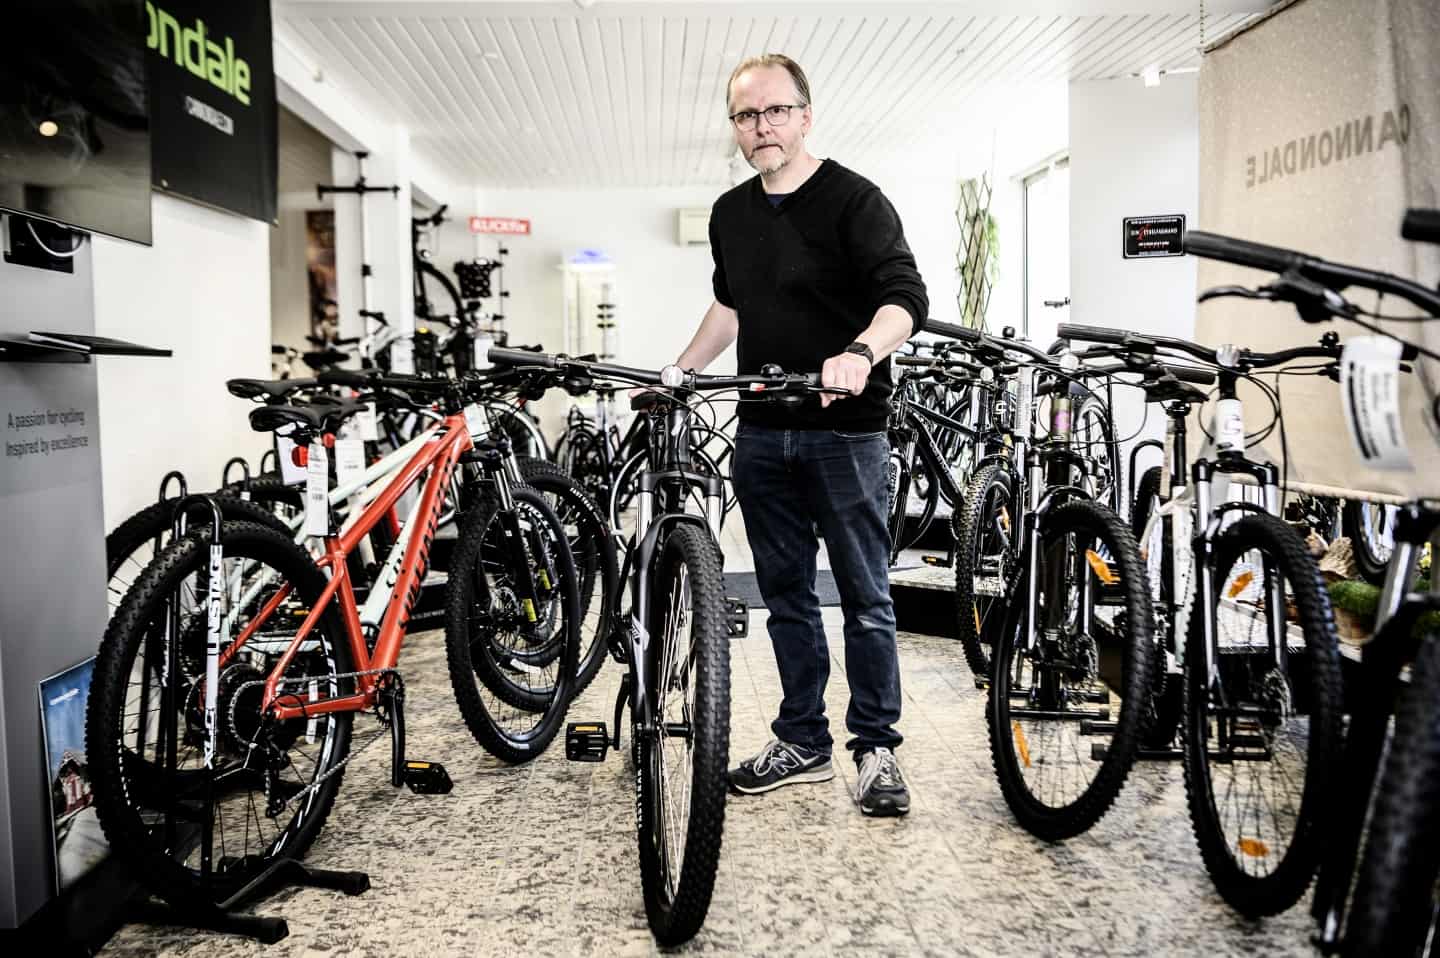 Sanktion Nægte ordbog Touren kom til Vejle, og Jonas vandt det hele: Lokal cykelhandler ser en  vækst i salget på mindst 20 procent efter sommerens gule succes | vafo.dk